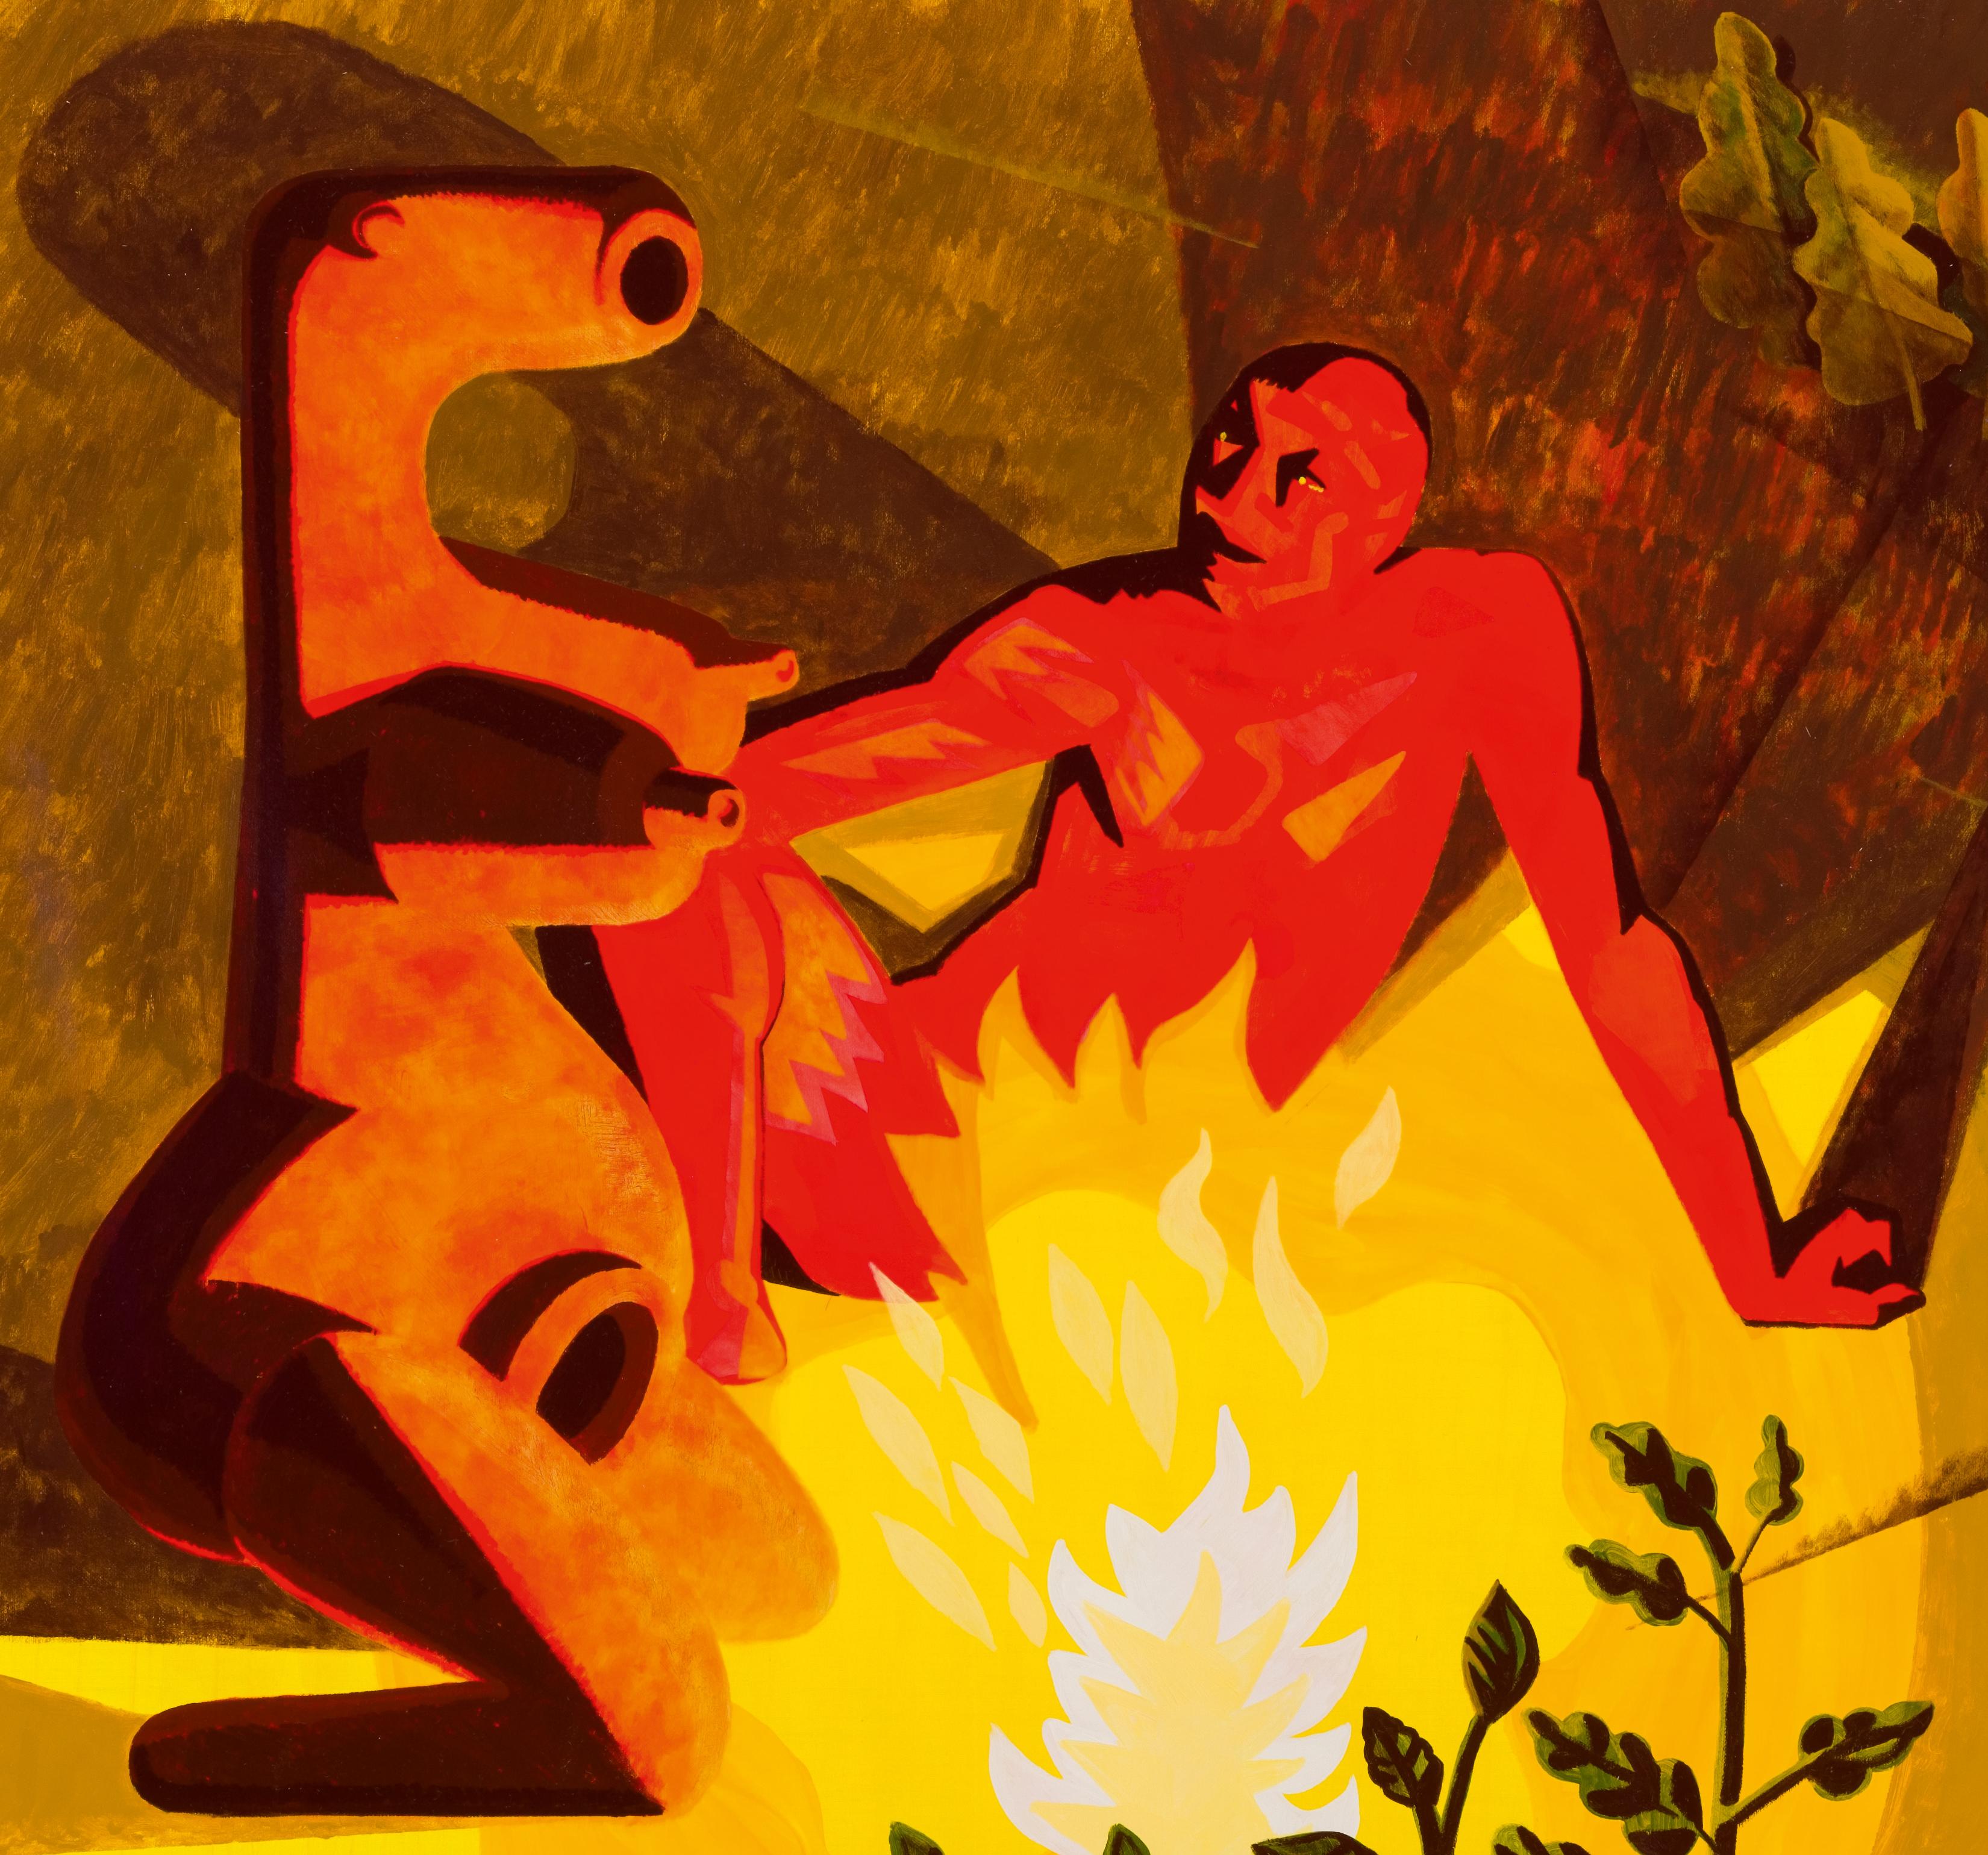 Erinnerung an eine große Liebe - Zeitgenössisch, Feuer, Prometheus, Paar, Akt, Mythos – Painting von Alexandru Rădvan